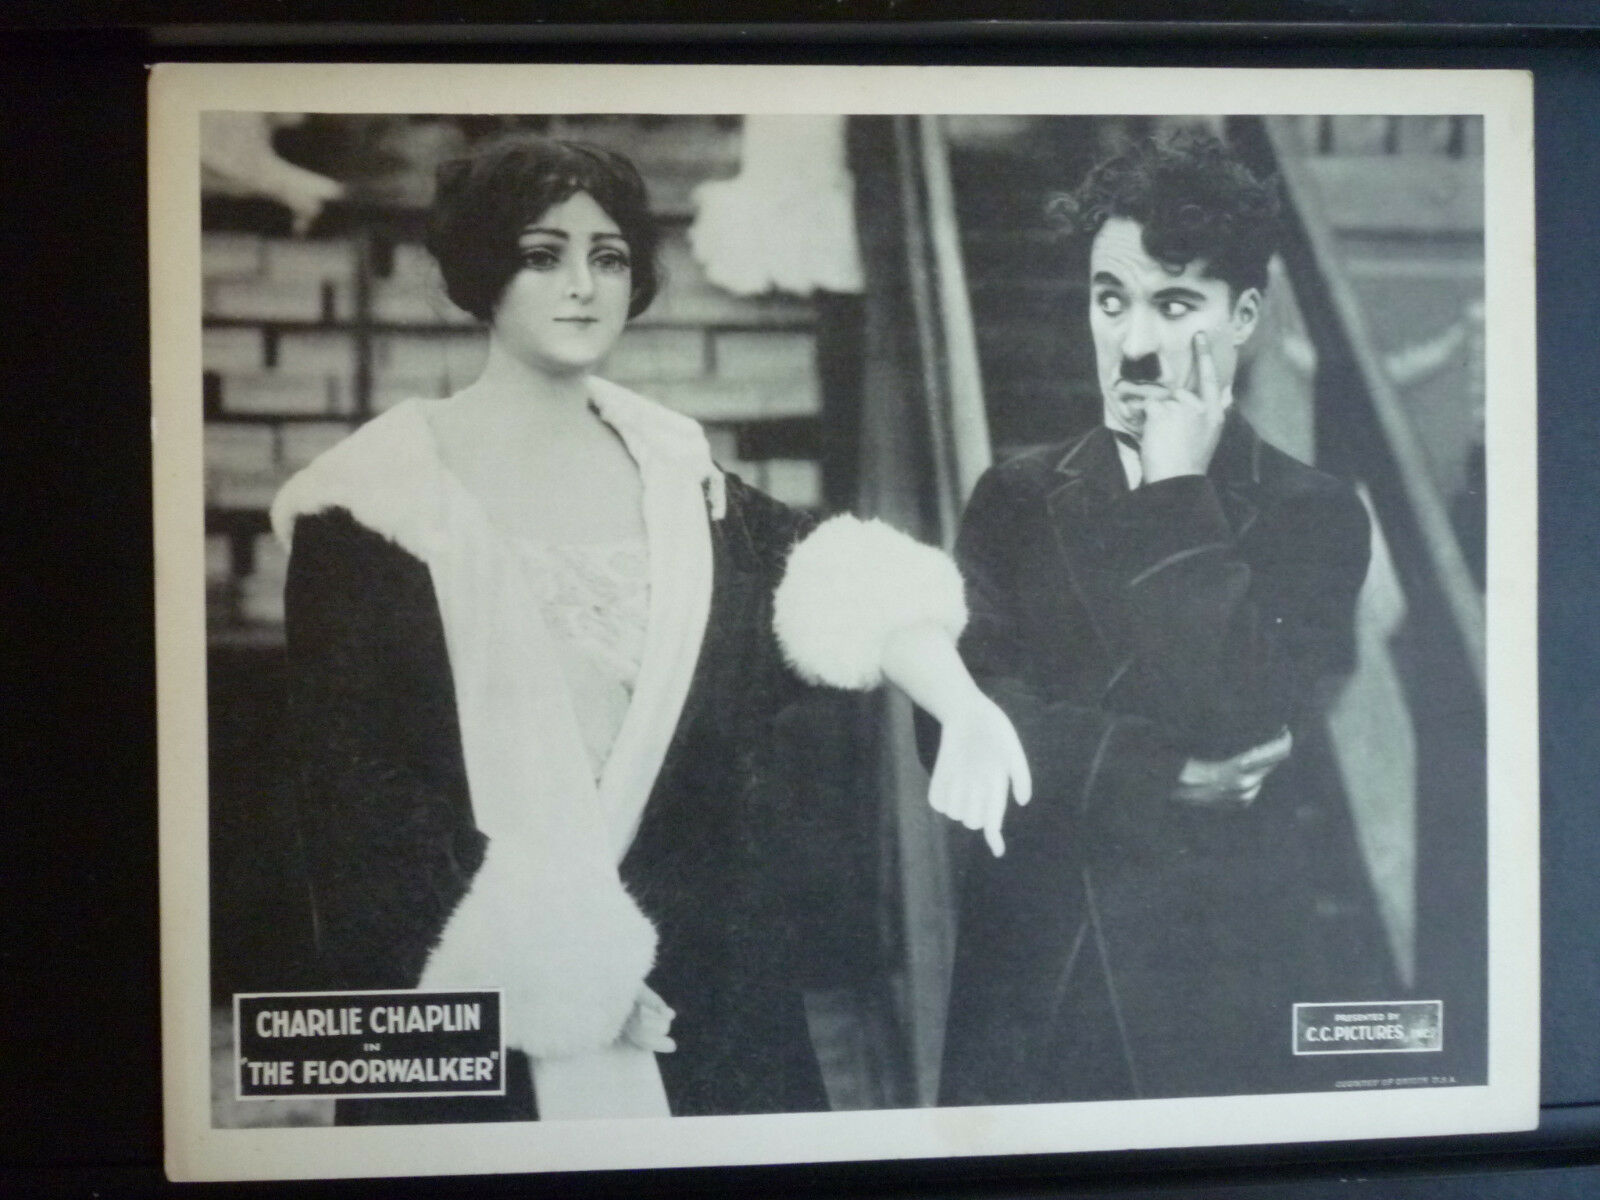 1916 The Floorwalker - Rare R1920s Lobby Card - Charlie Chaplin Silent Comedy